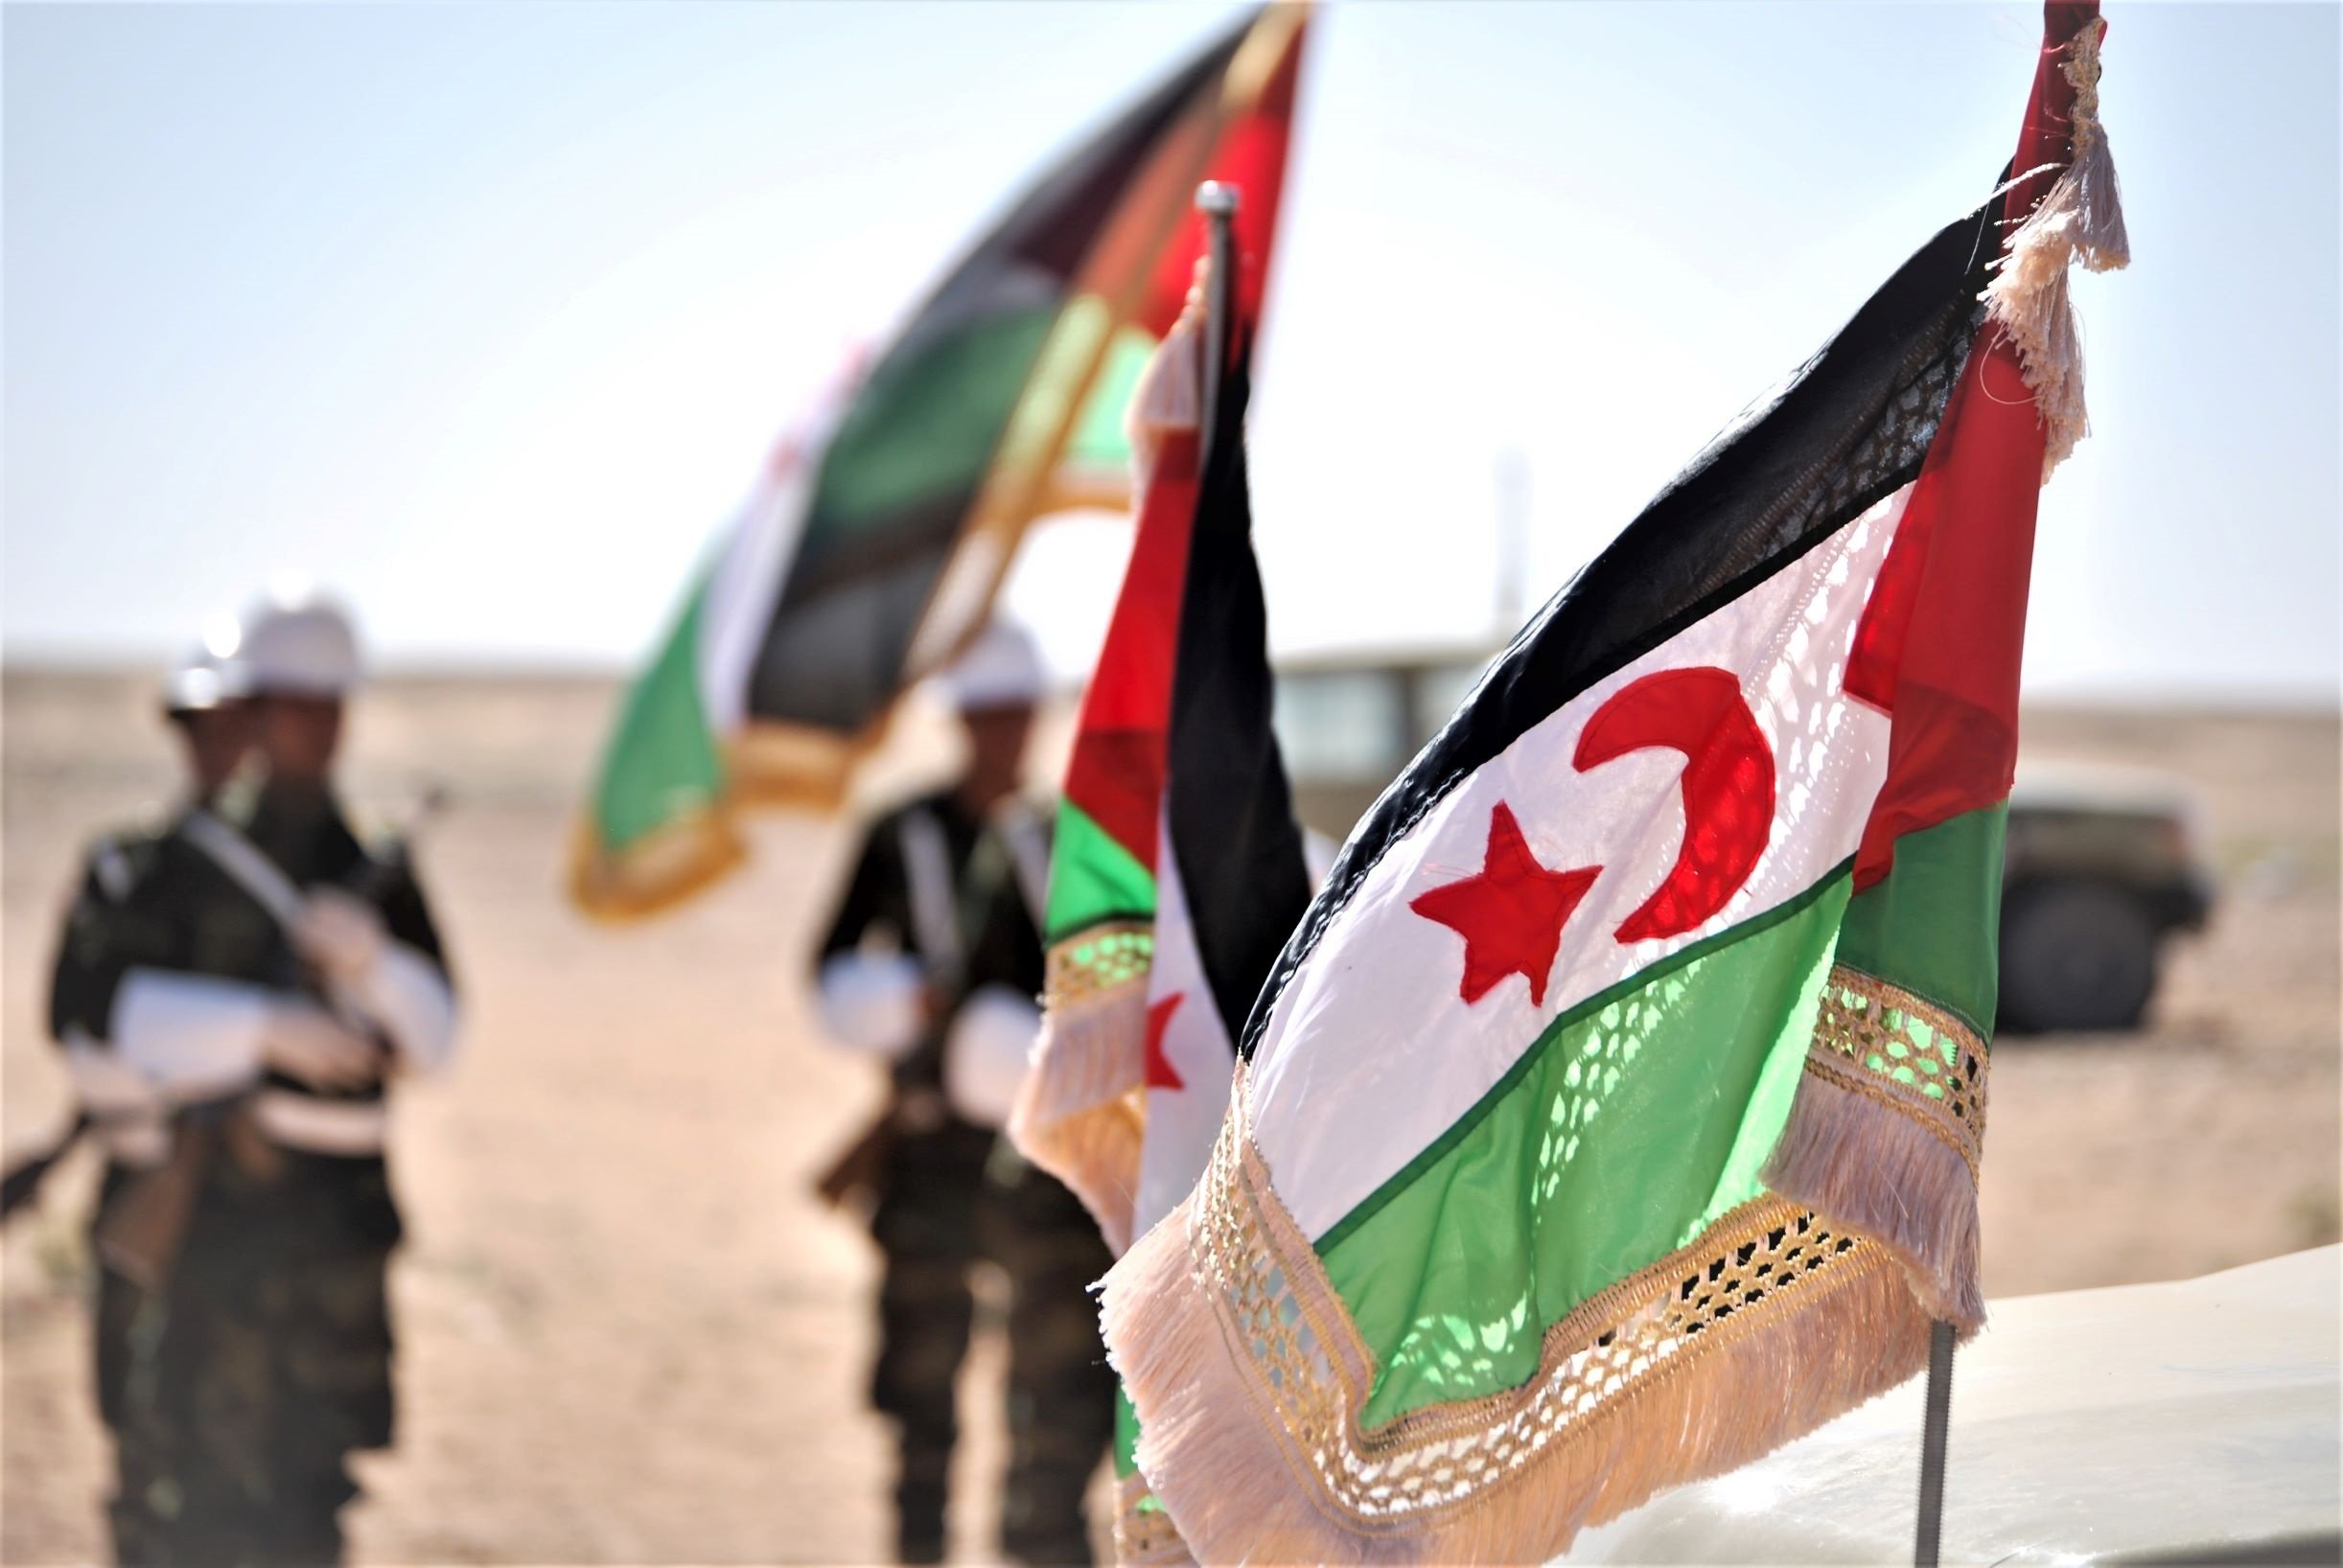 España ignora a la ONU y evita dar apoyo al referéndum del Sáhara Occidental